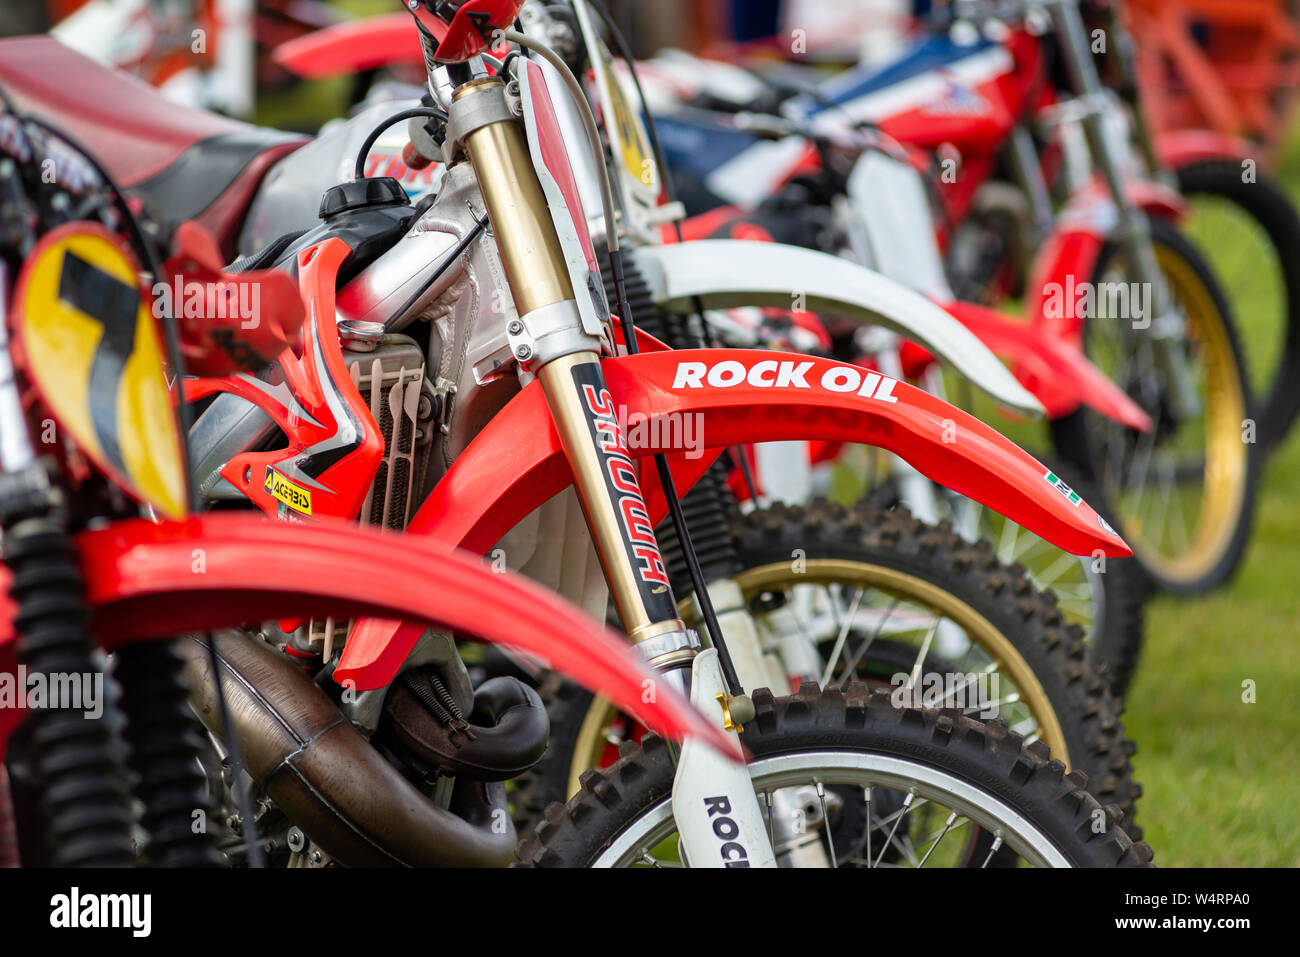 Red trial bike motocicli sul display in estate fete. Foto Stock